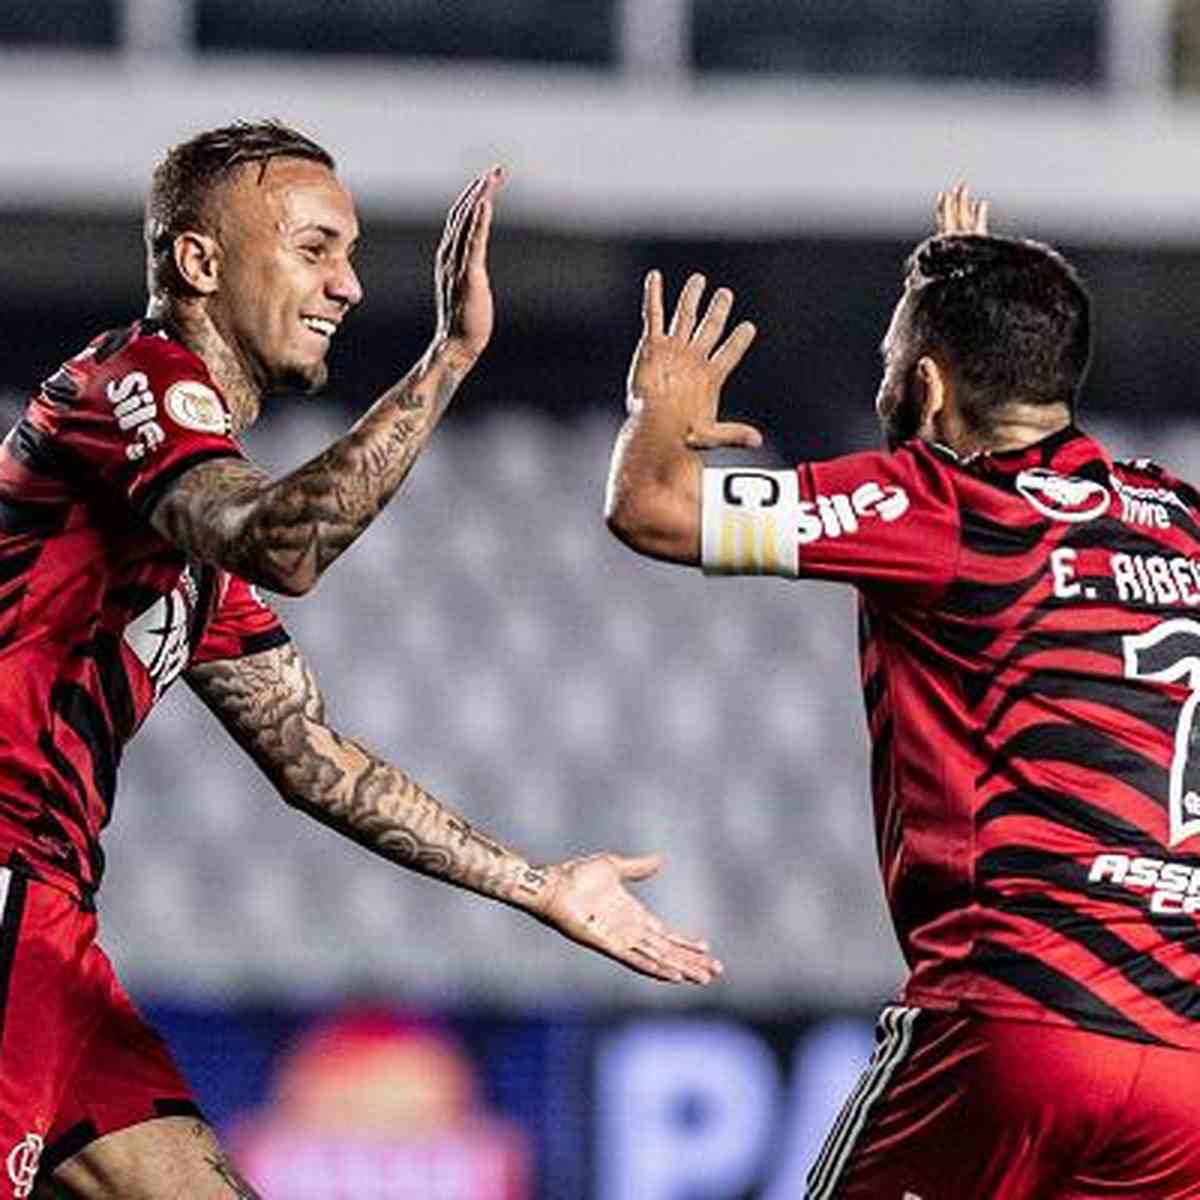 VÍDEO: Melhores momentos: Flamengo 1 x 2 Santos (Brasileirão)